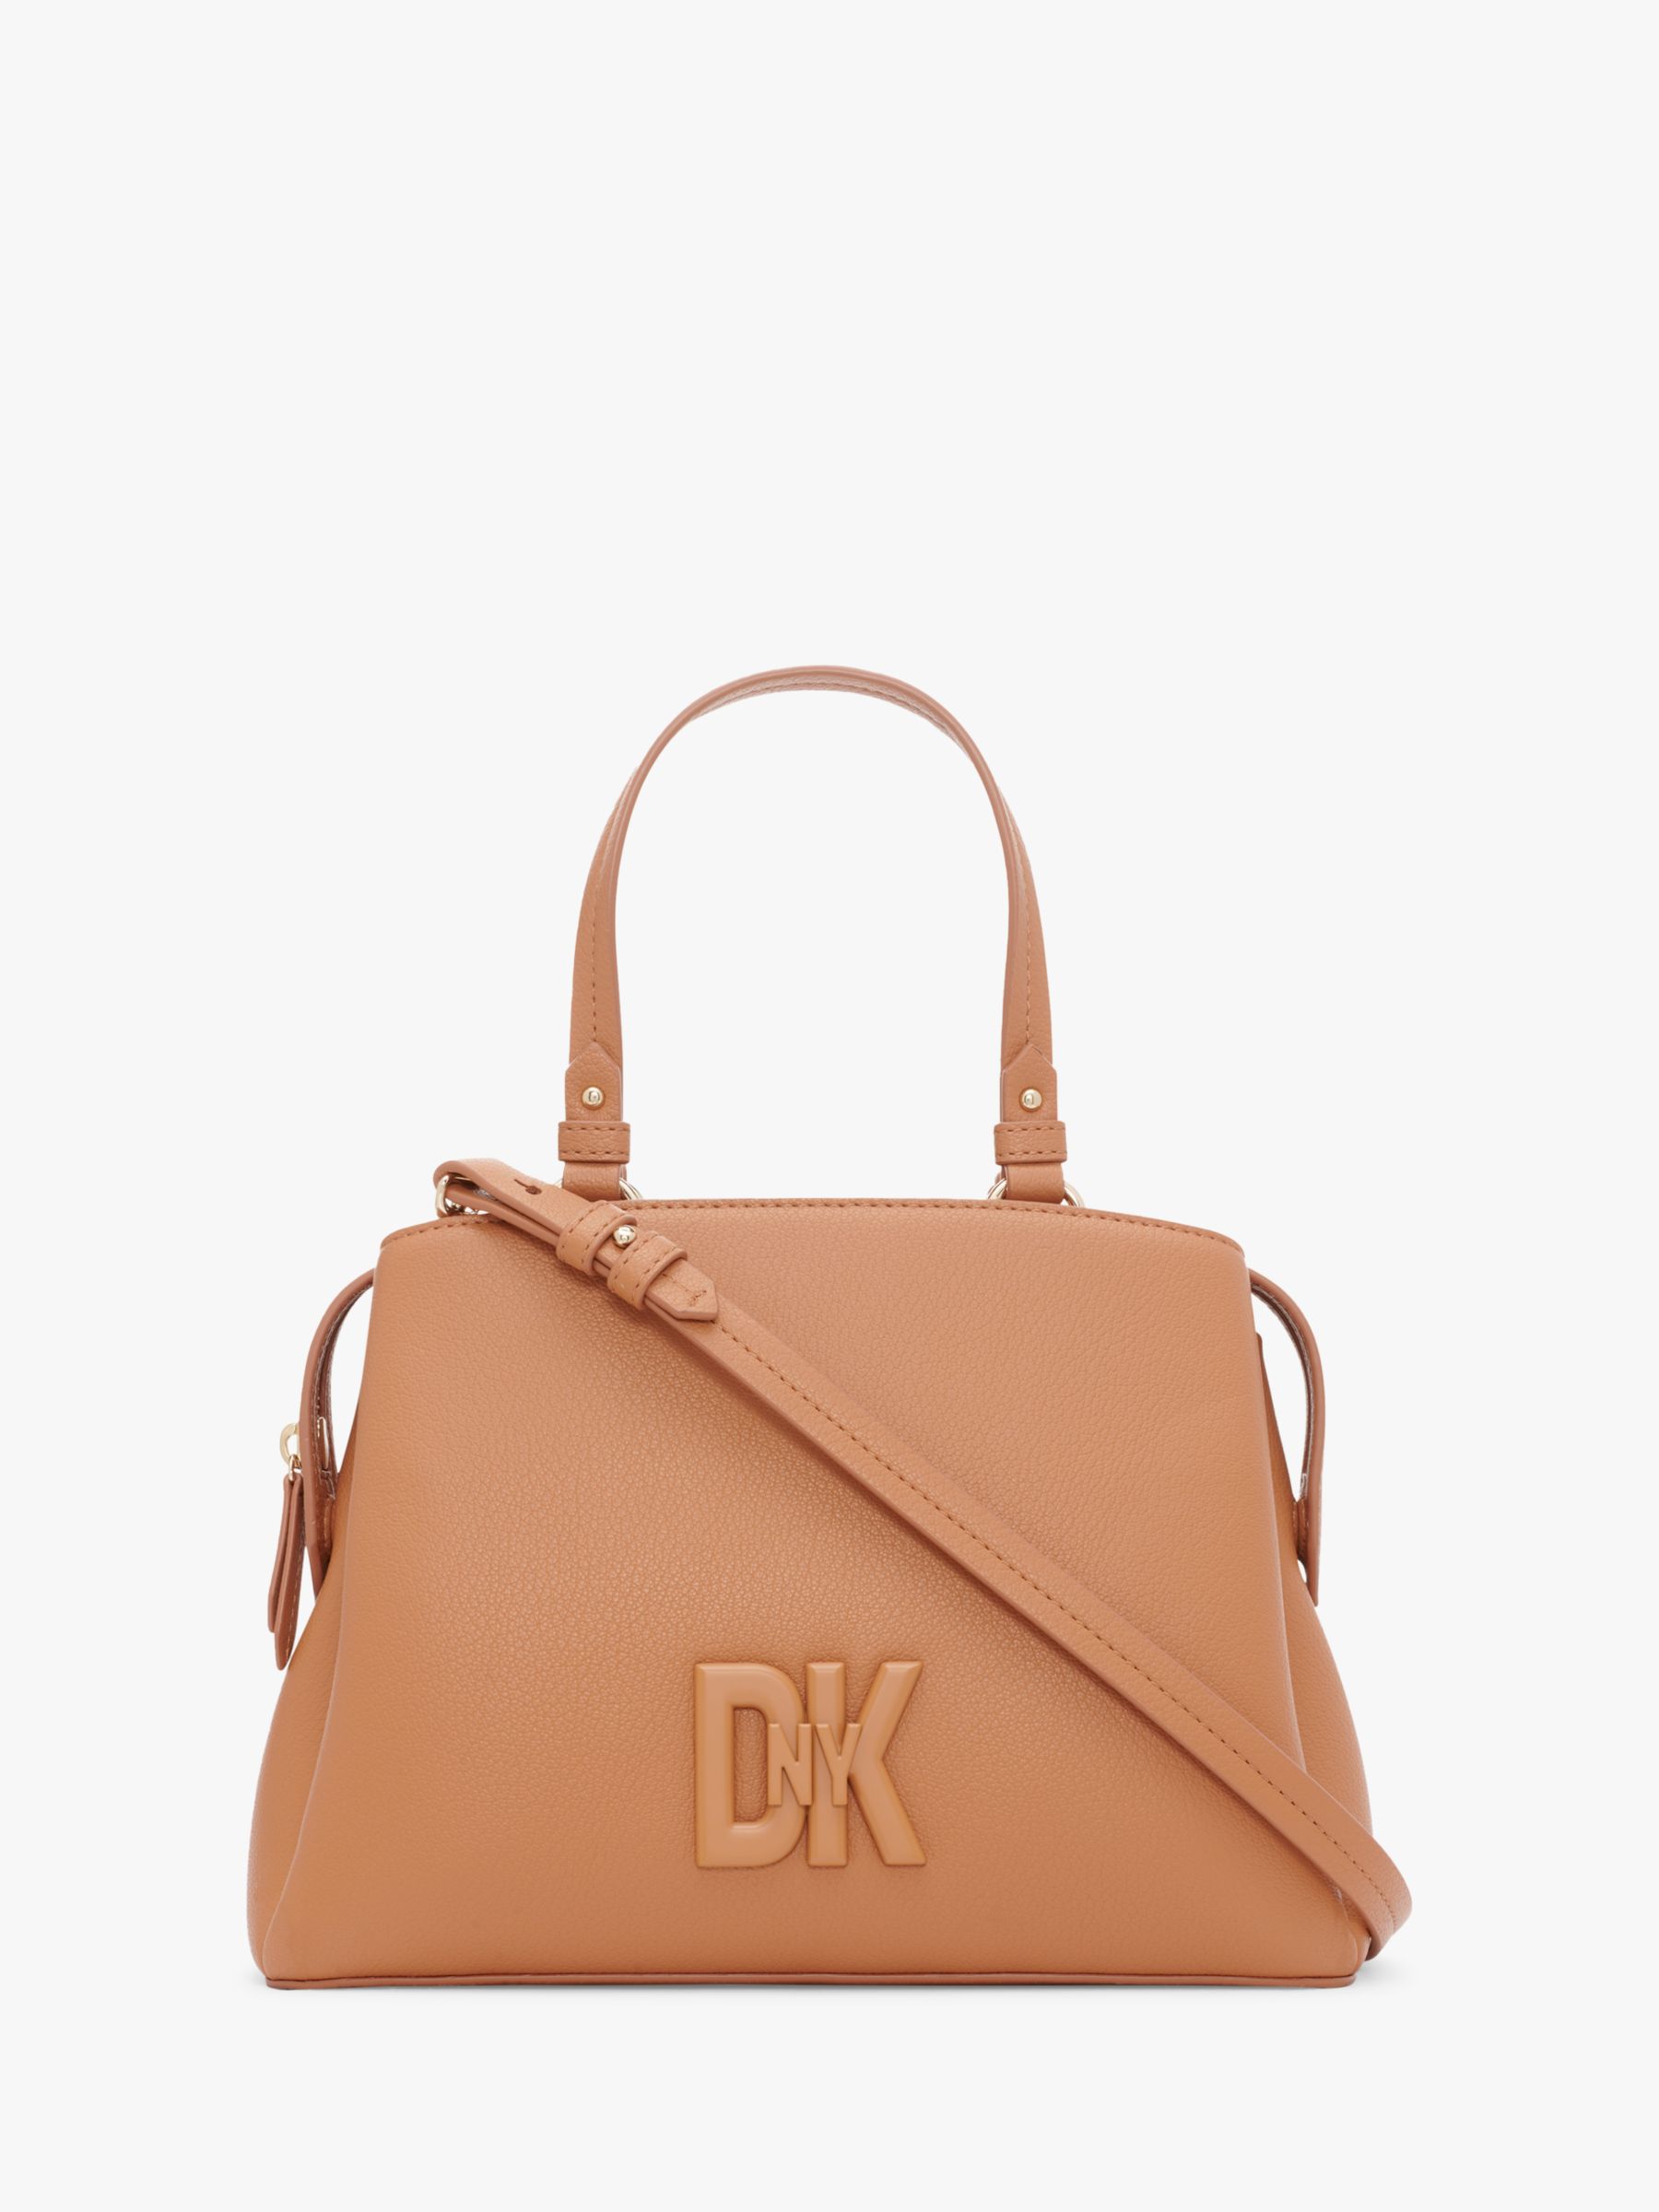 DKNY Seventh Avenue Leather Shoulder Bag, Caramel